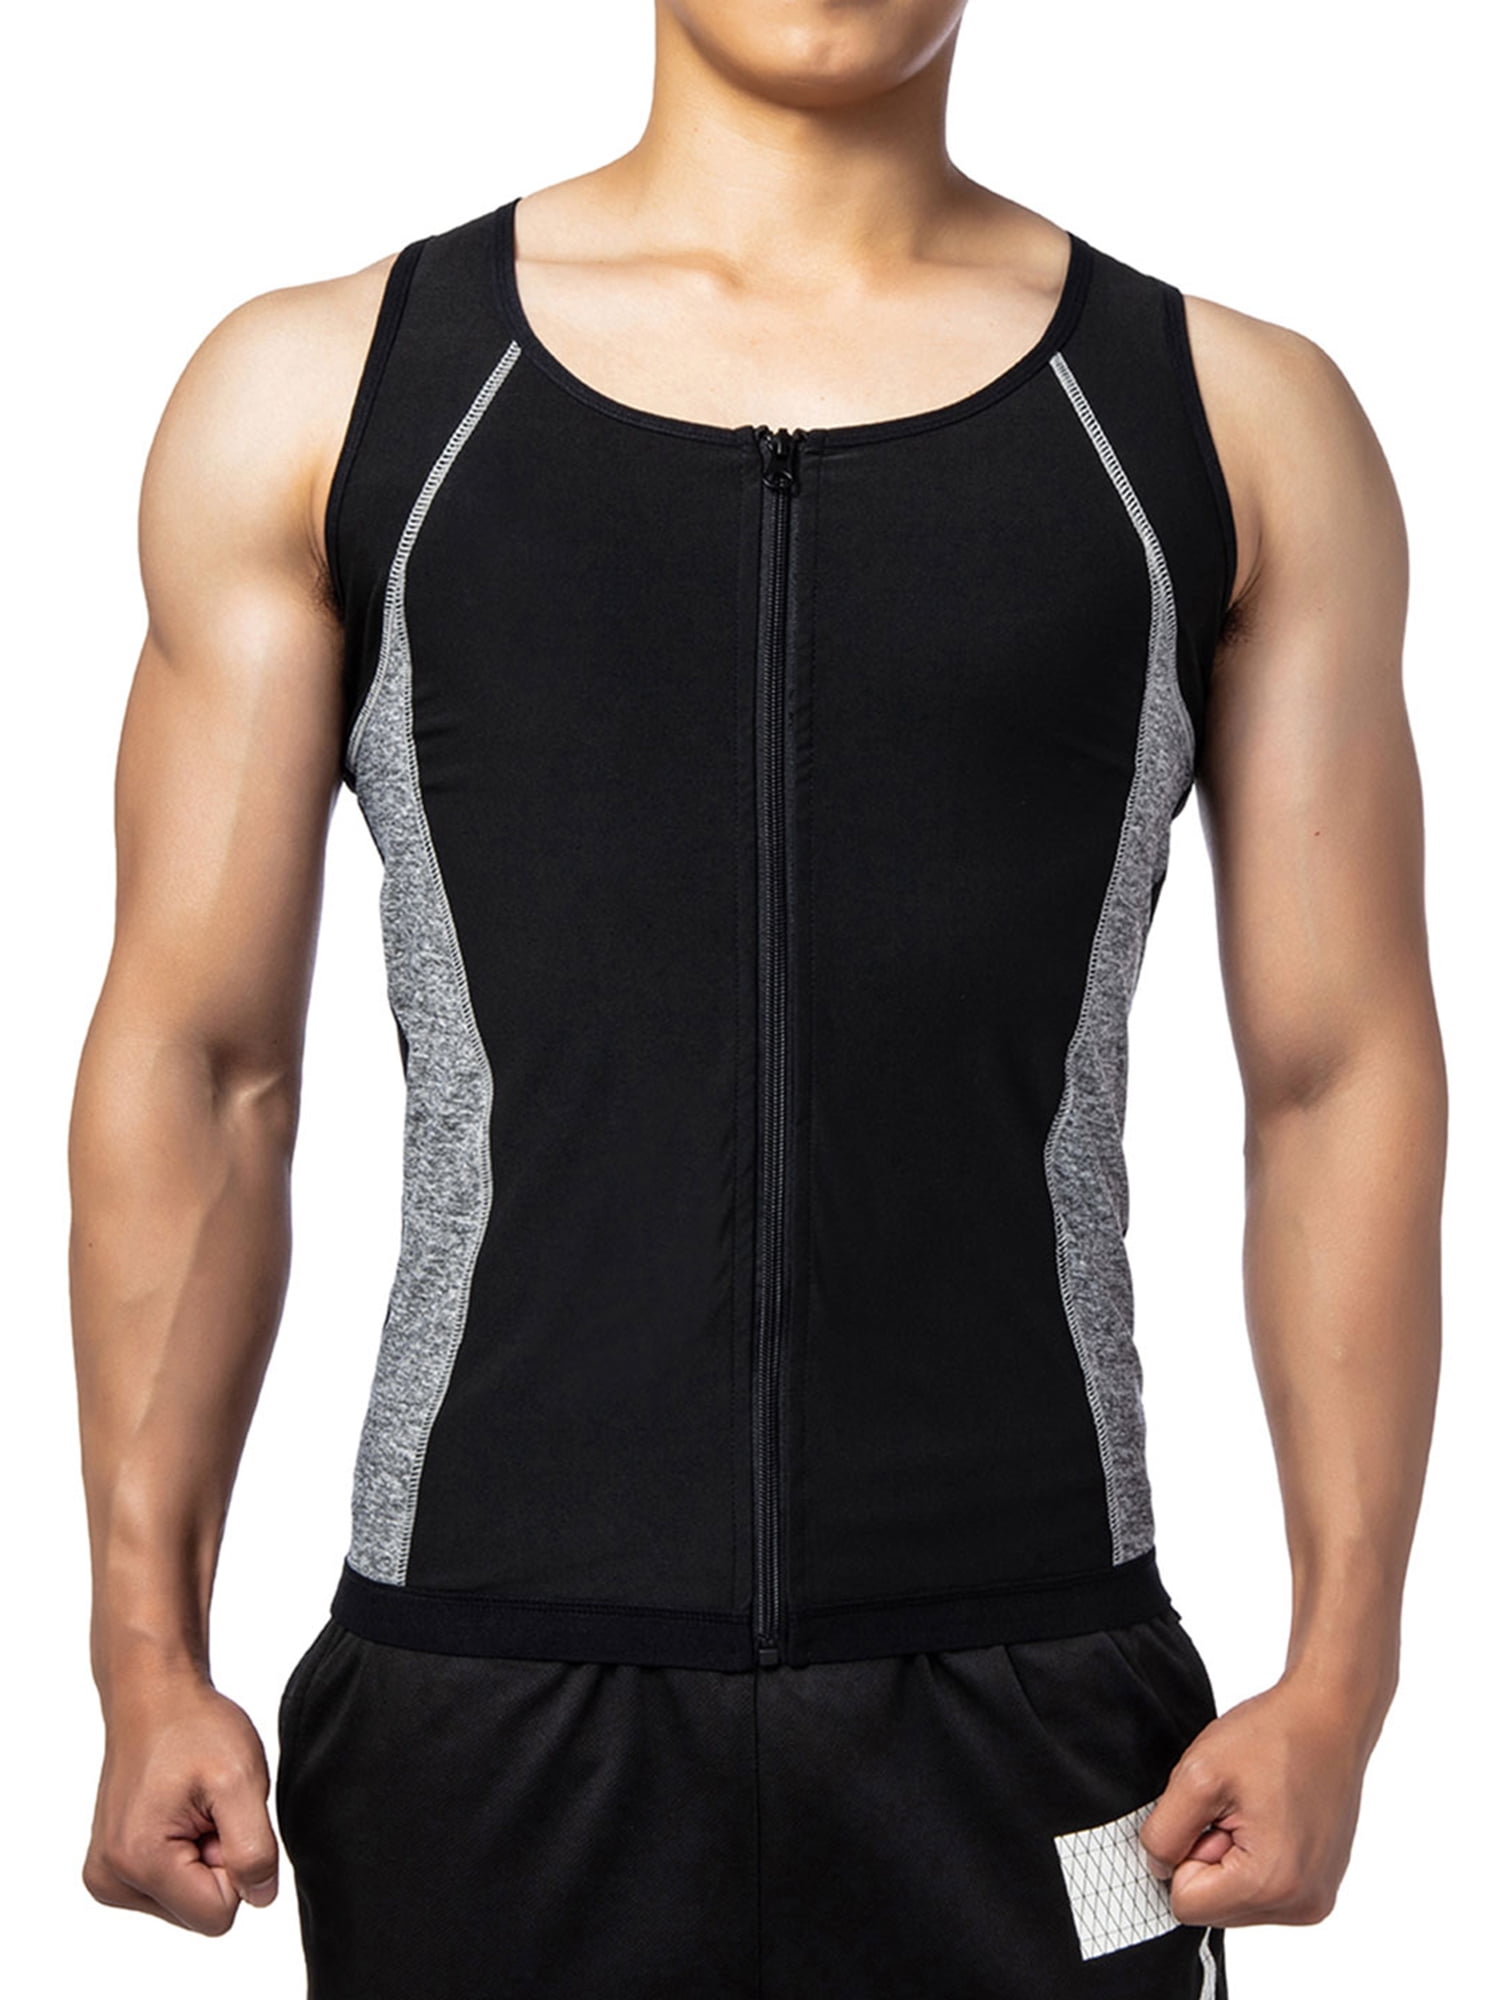 Fit Style Waist Trainer Vest for Weightloss Hot Neoprene Corset Body Shaper Zipper Sauna Tank Top Slimming Body Shaper Neoprene For Men